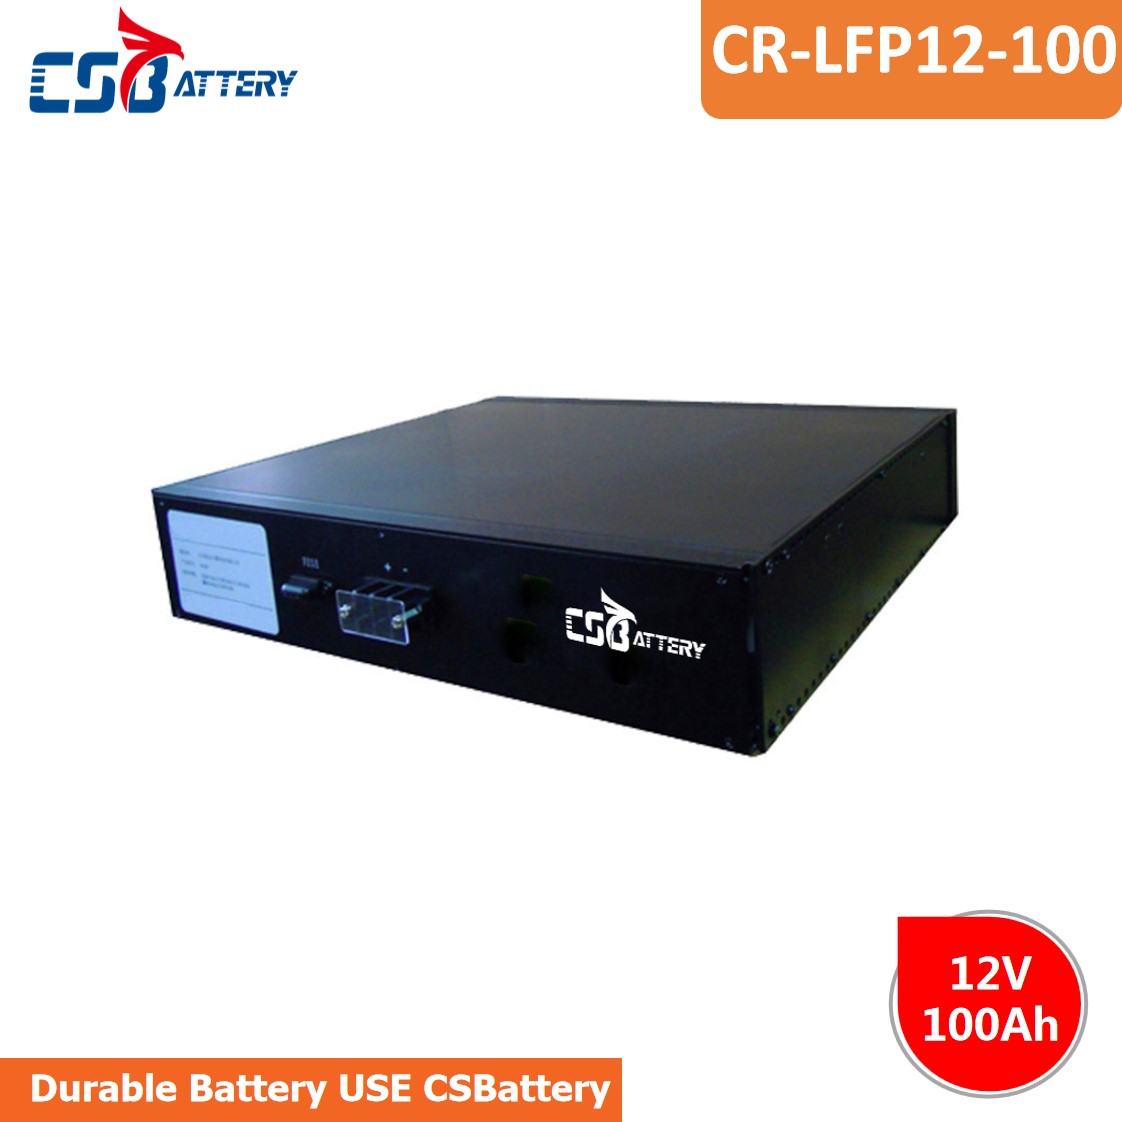 LPR12-100 12V 100Ah LifePO4 Batteries For 19’Rack